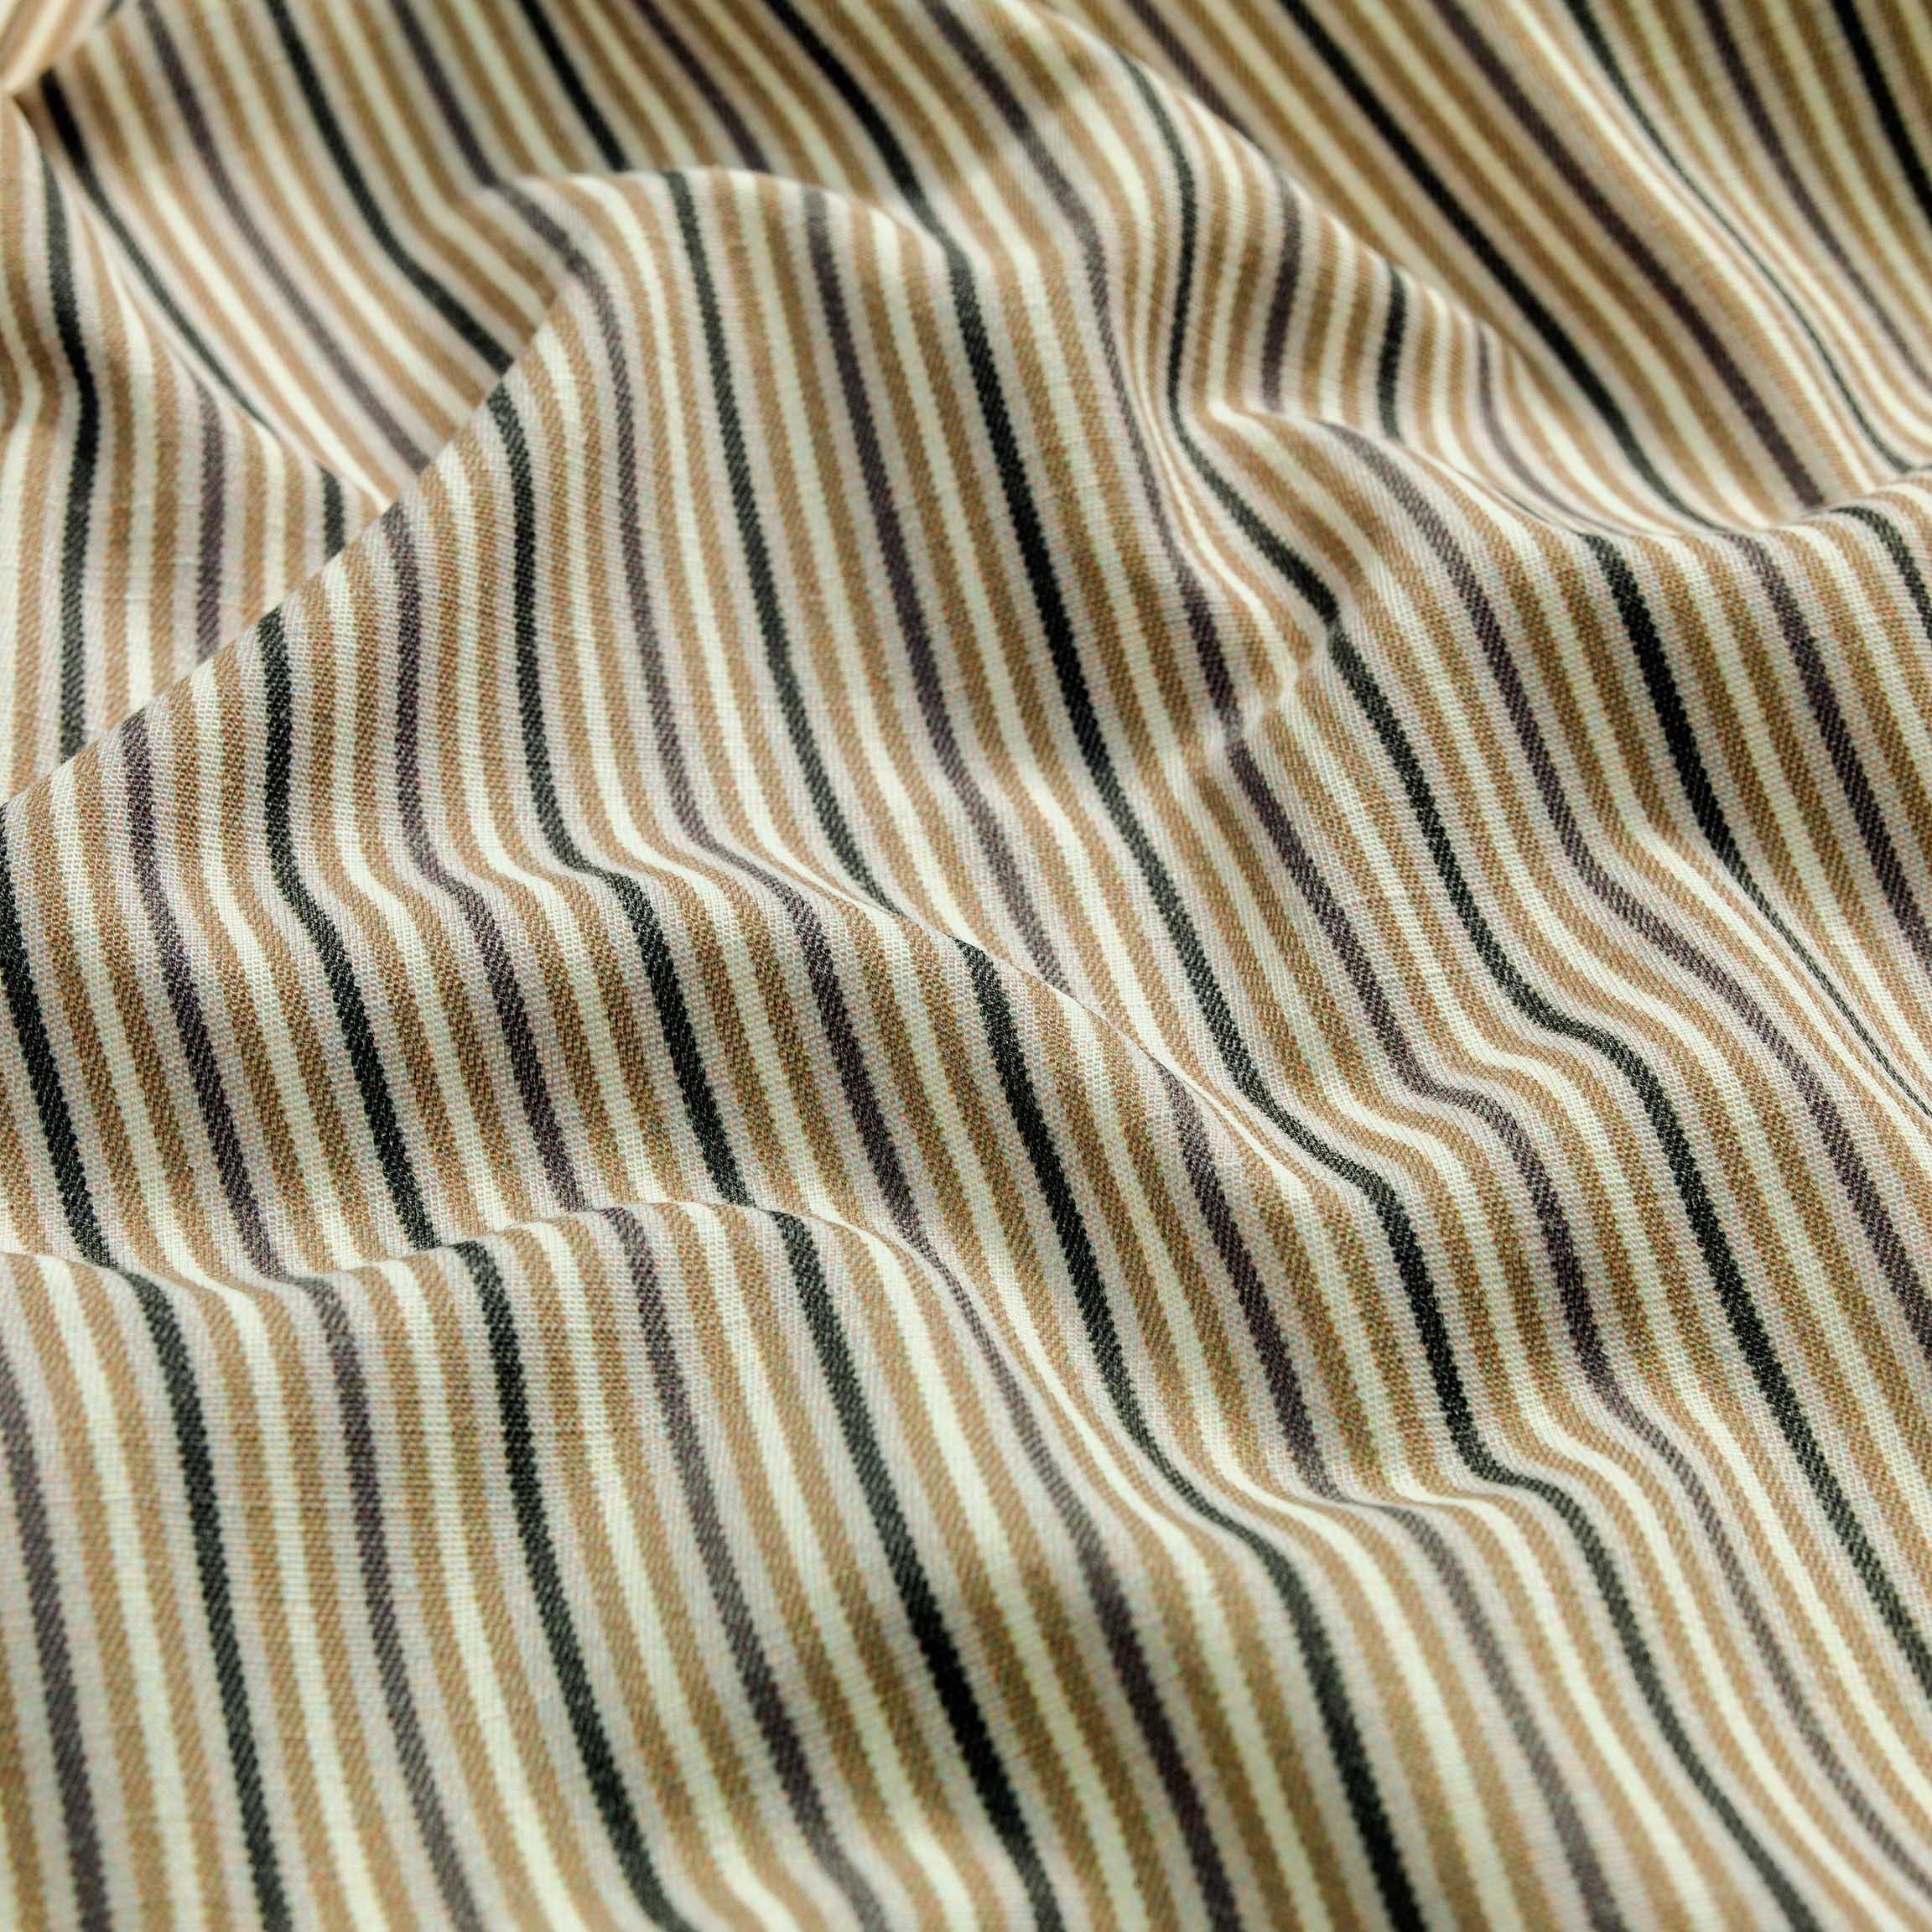  Портьерная ткань TOSCANA STRIPE, ширина 282,5 см  - Фото